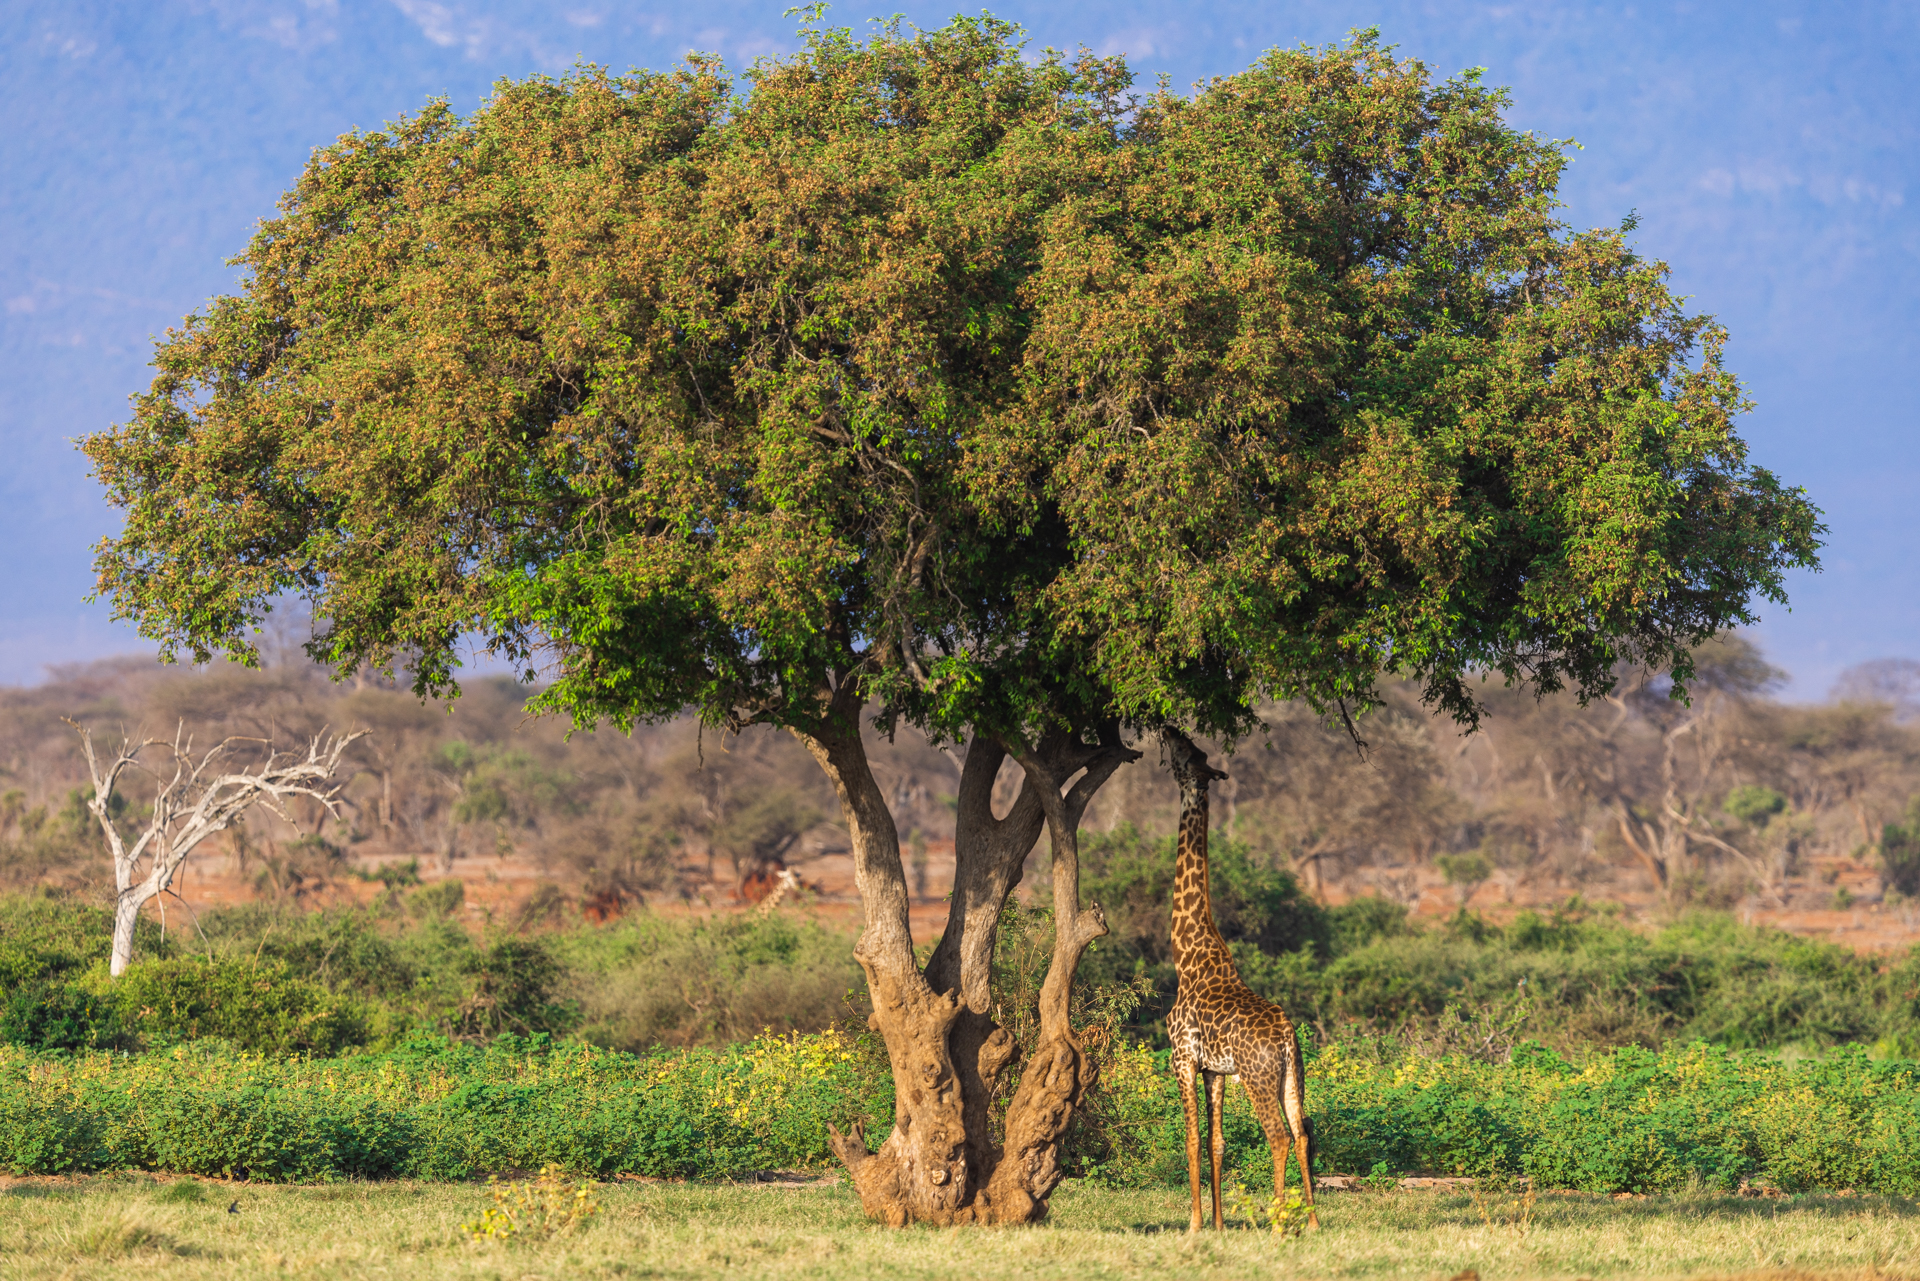 Une girafe mange des feuilles d'un arbre, Kenya - A giraffe eats leaves from a tree, Kenya / Giraffa camelopardalis